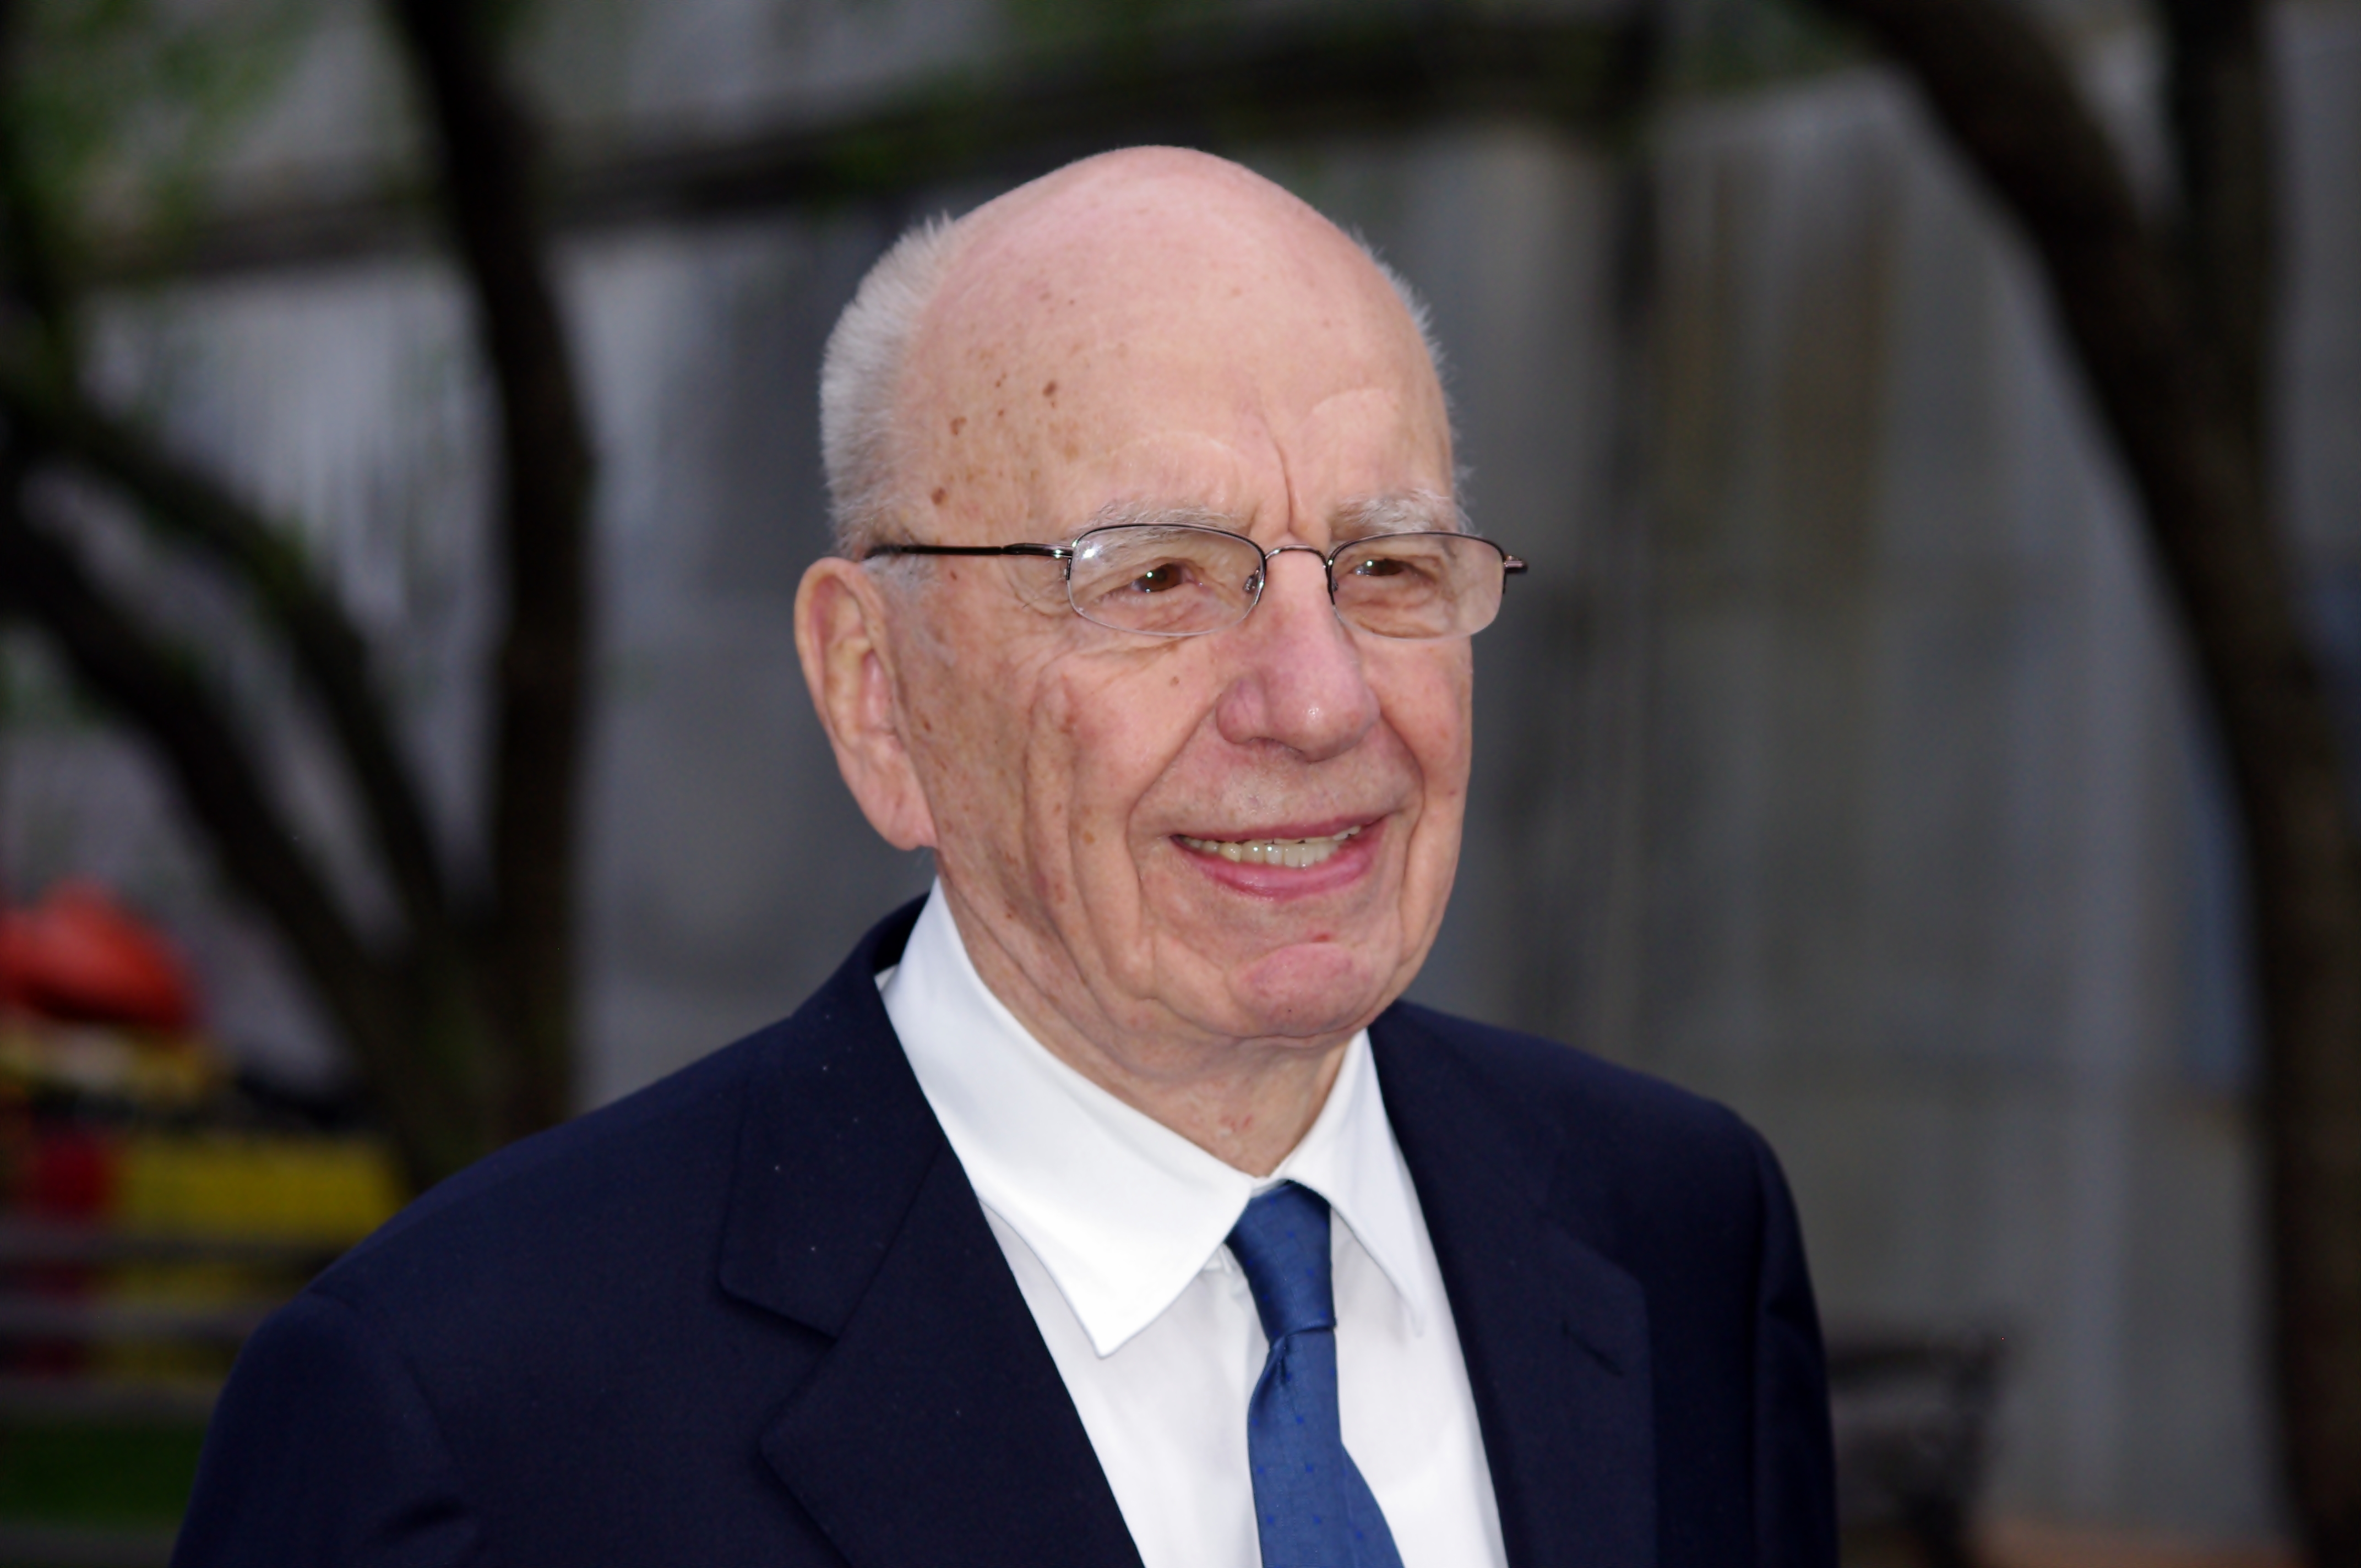 News Corp. Chairman and CEO Rupert Murdoch